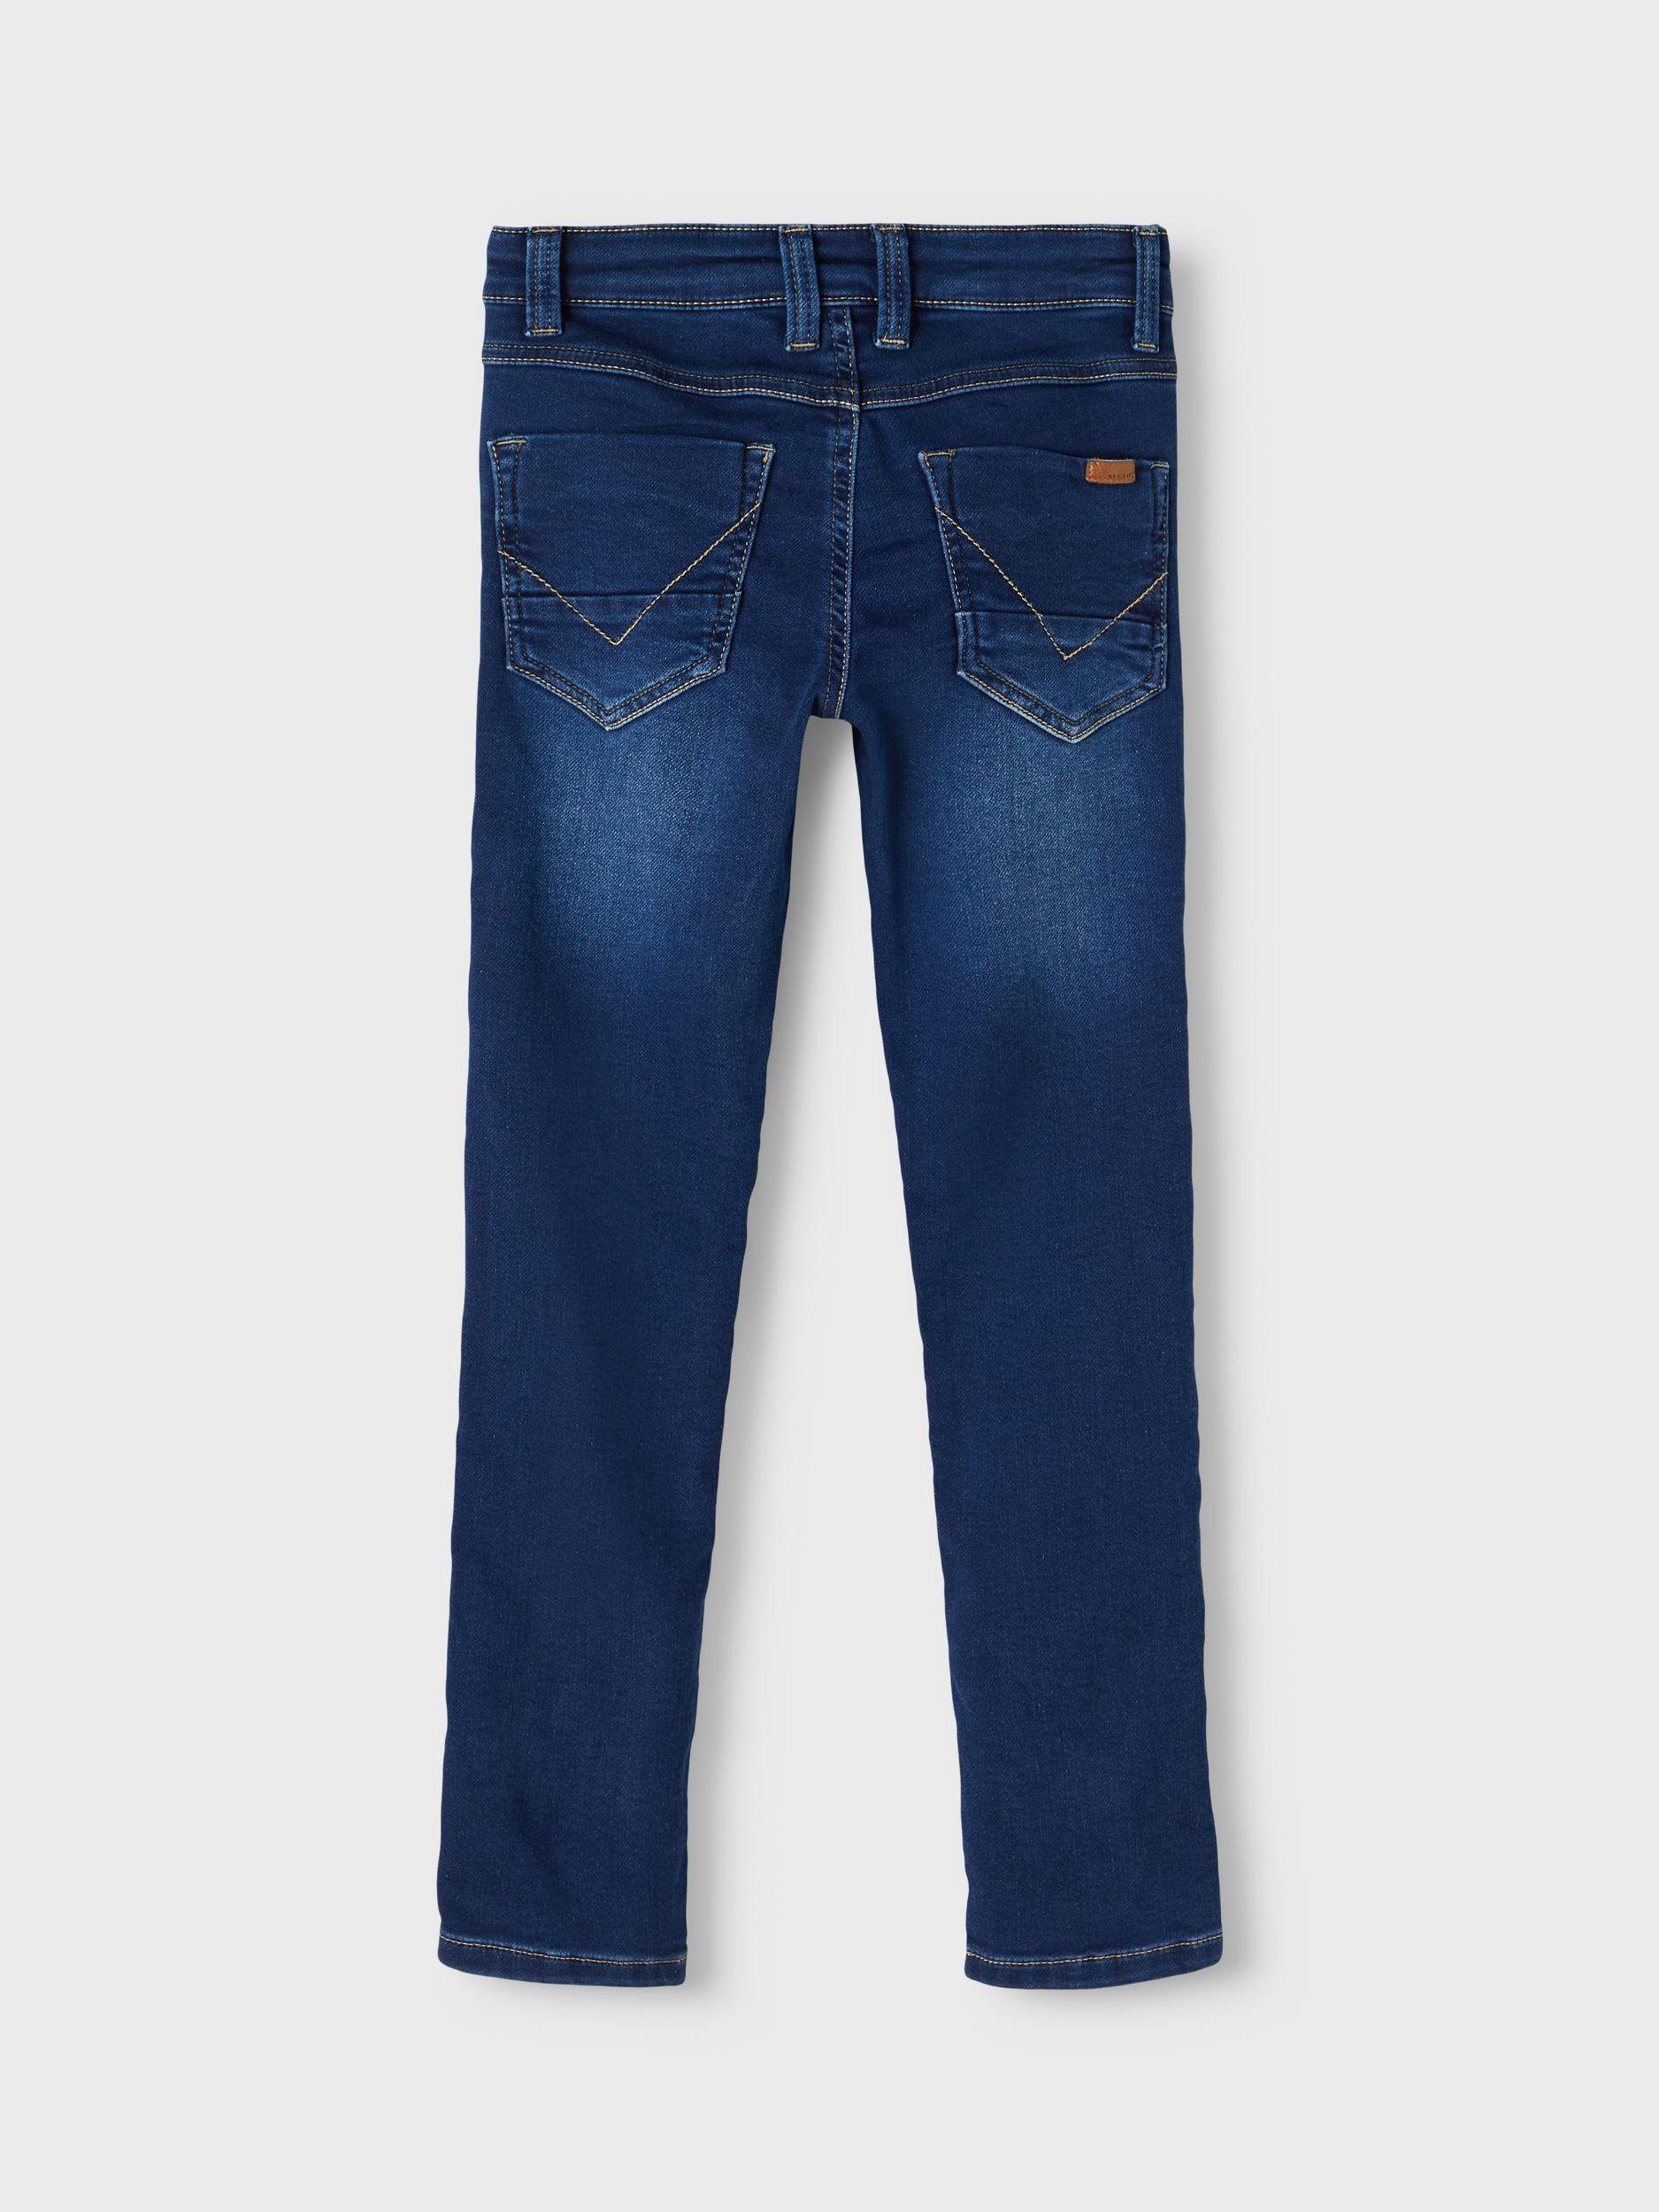 Name Denim It Jungen 5-Pocket-Jeans X-Slim in Fit Hose